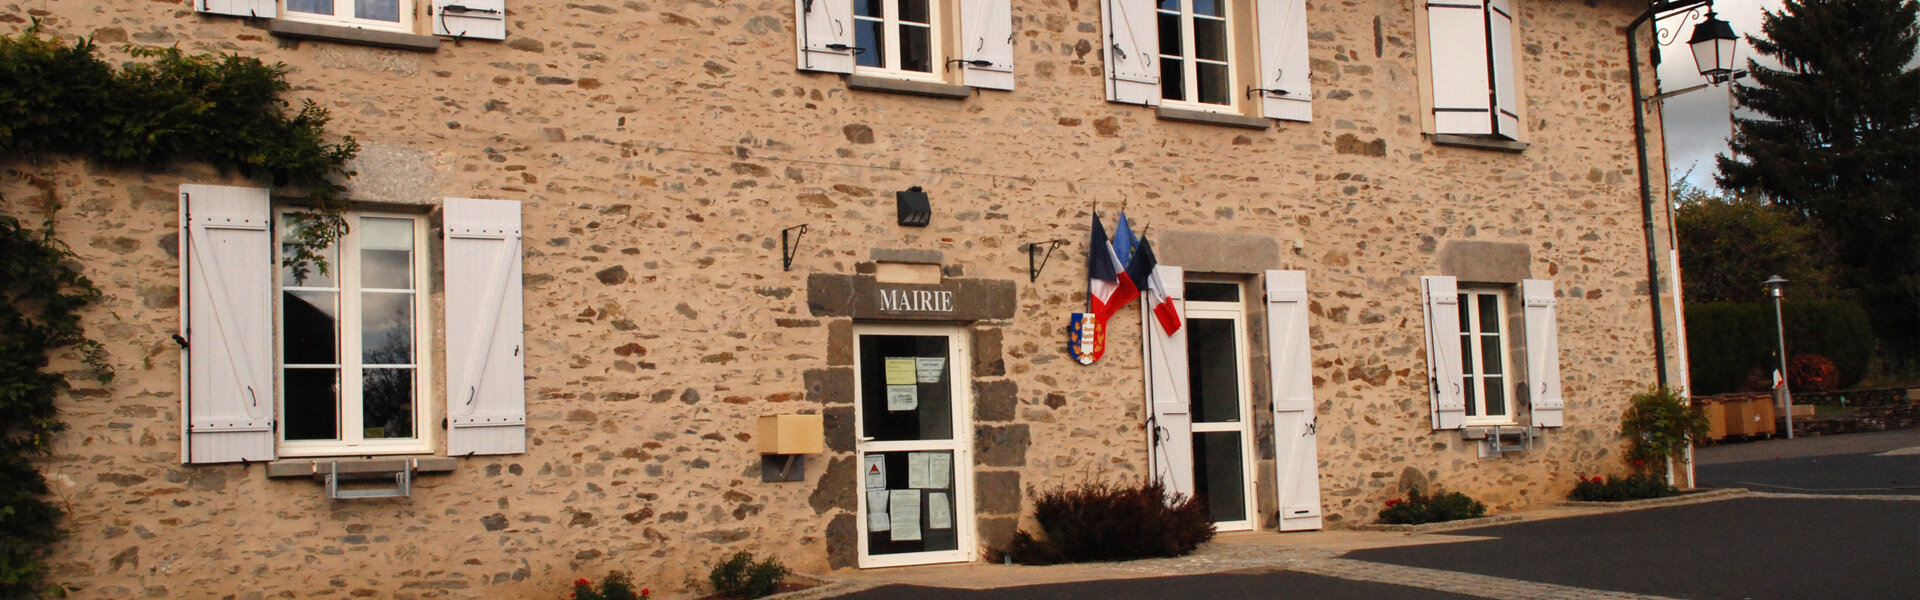 Commune de Roannes Saint-Mary - Cantal